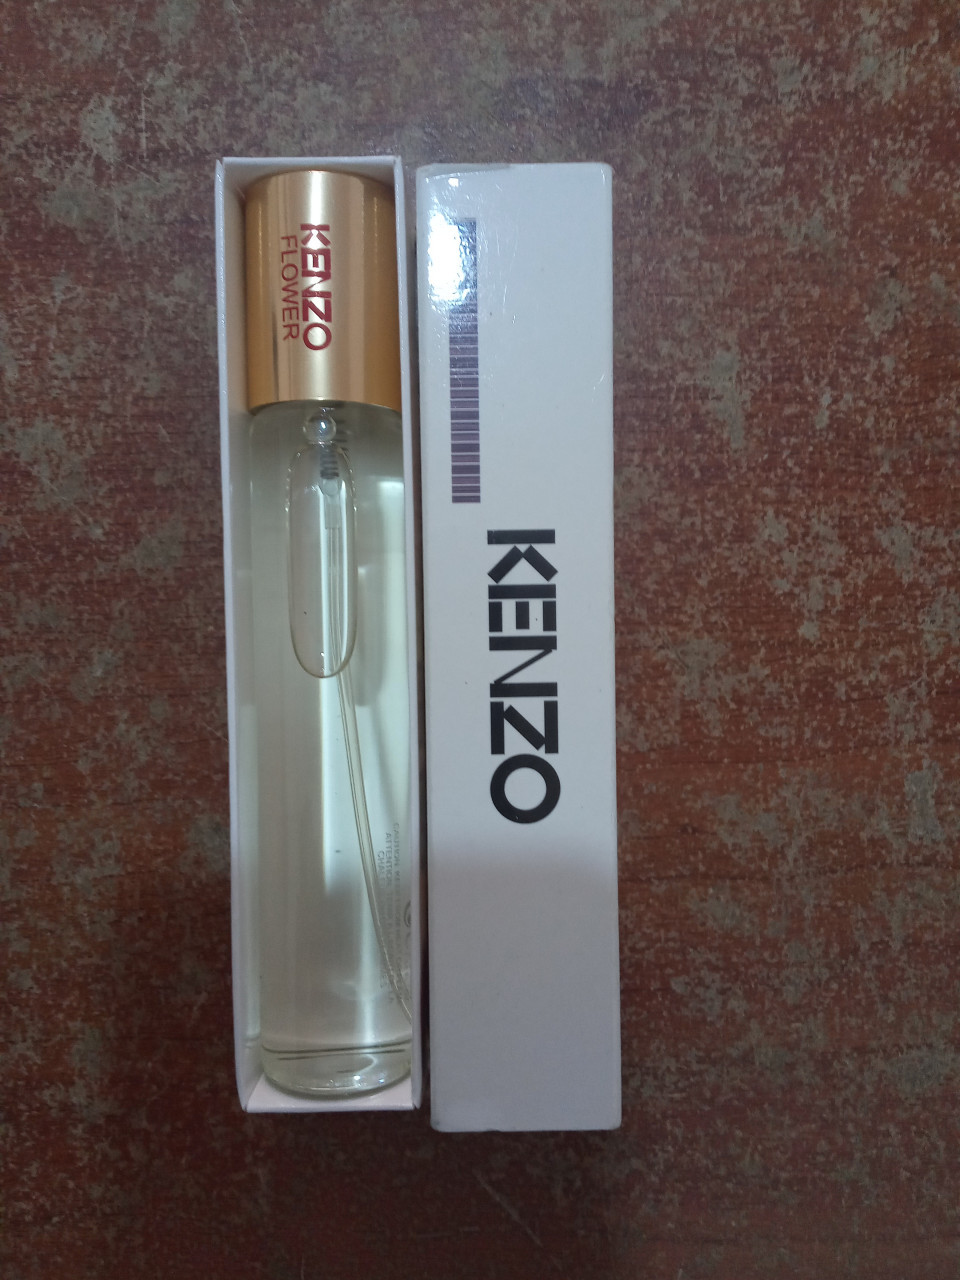 Perfumes Kenzo, Perfumes - Cosméticos, Bissau